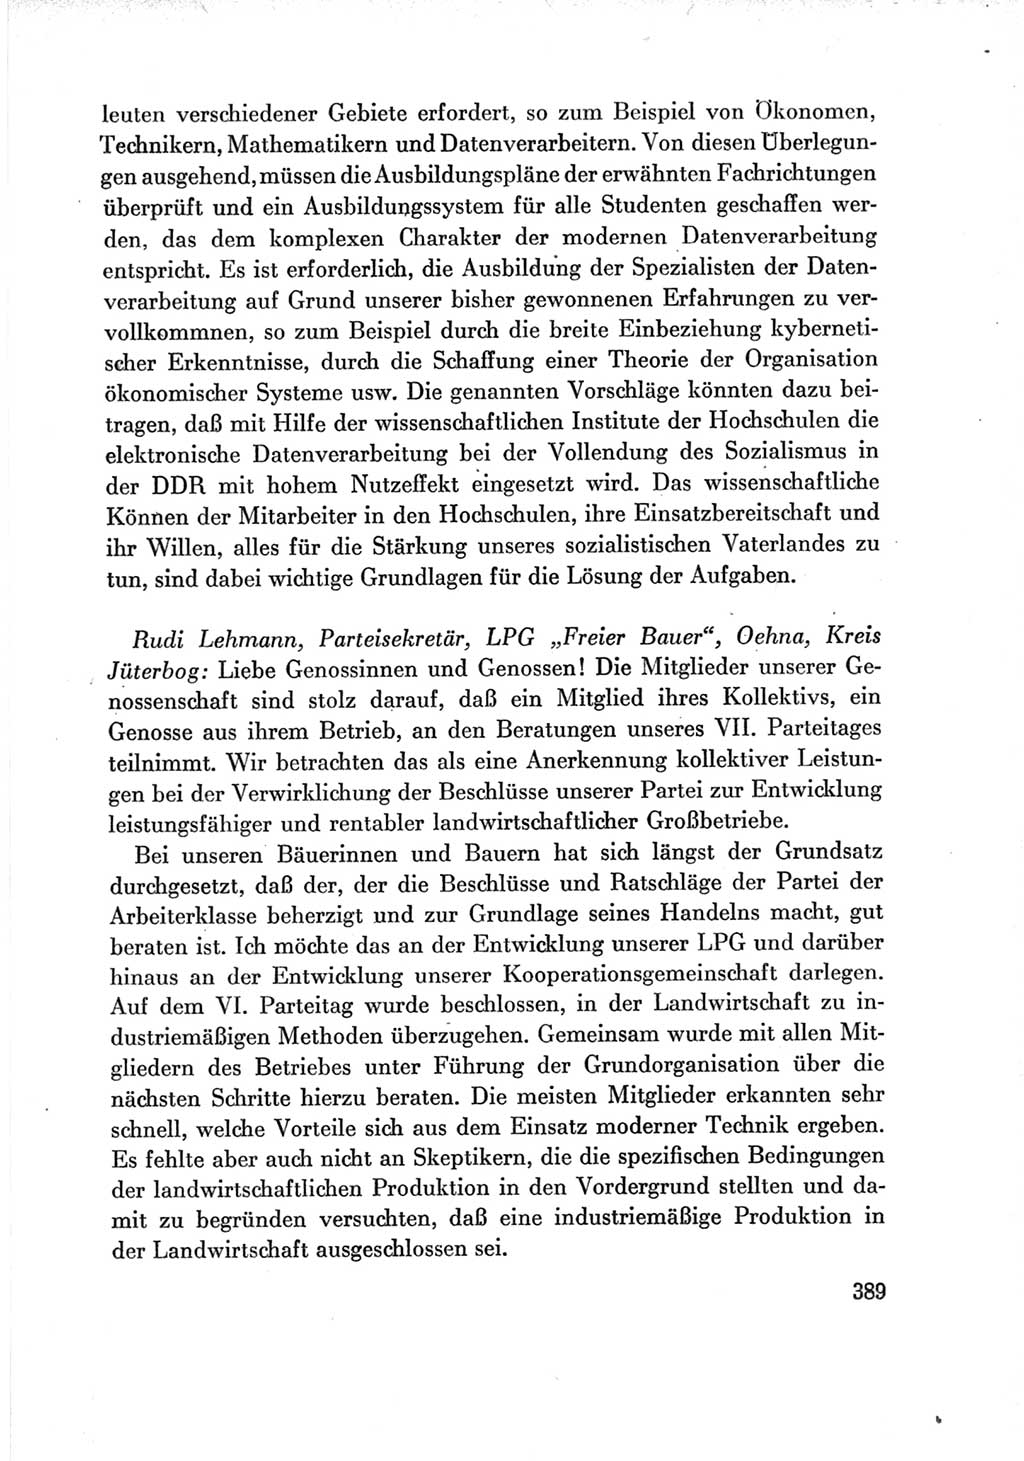 Protokoll der Verhandlungen des Ⅶ. Parteitages der Sozialistischen Einheitspartei Deutschlands (SED) [Deutsche Demokratische Republik (DDR)] 1967, Band Ⅲ, Seite 389 (Prot. Verh. Ⅶ. PT SED DDR 1967, Bd. Ⅲ, S. 389)